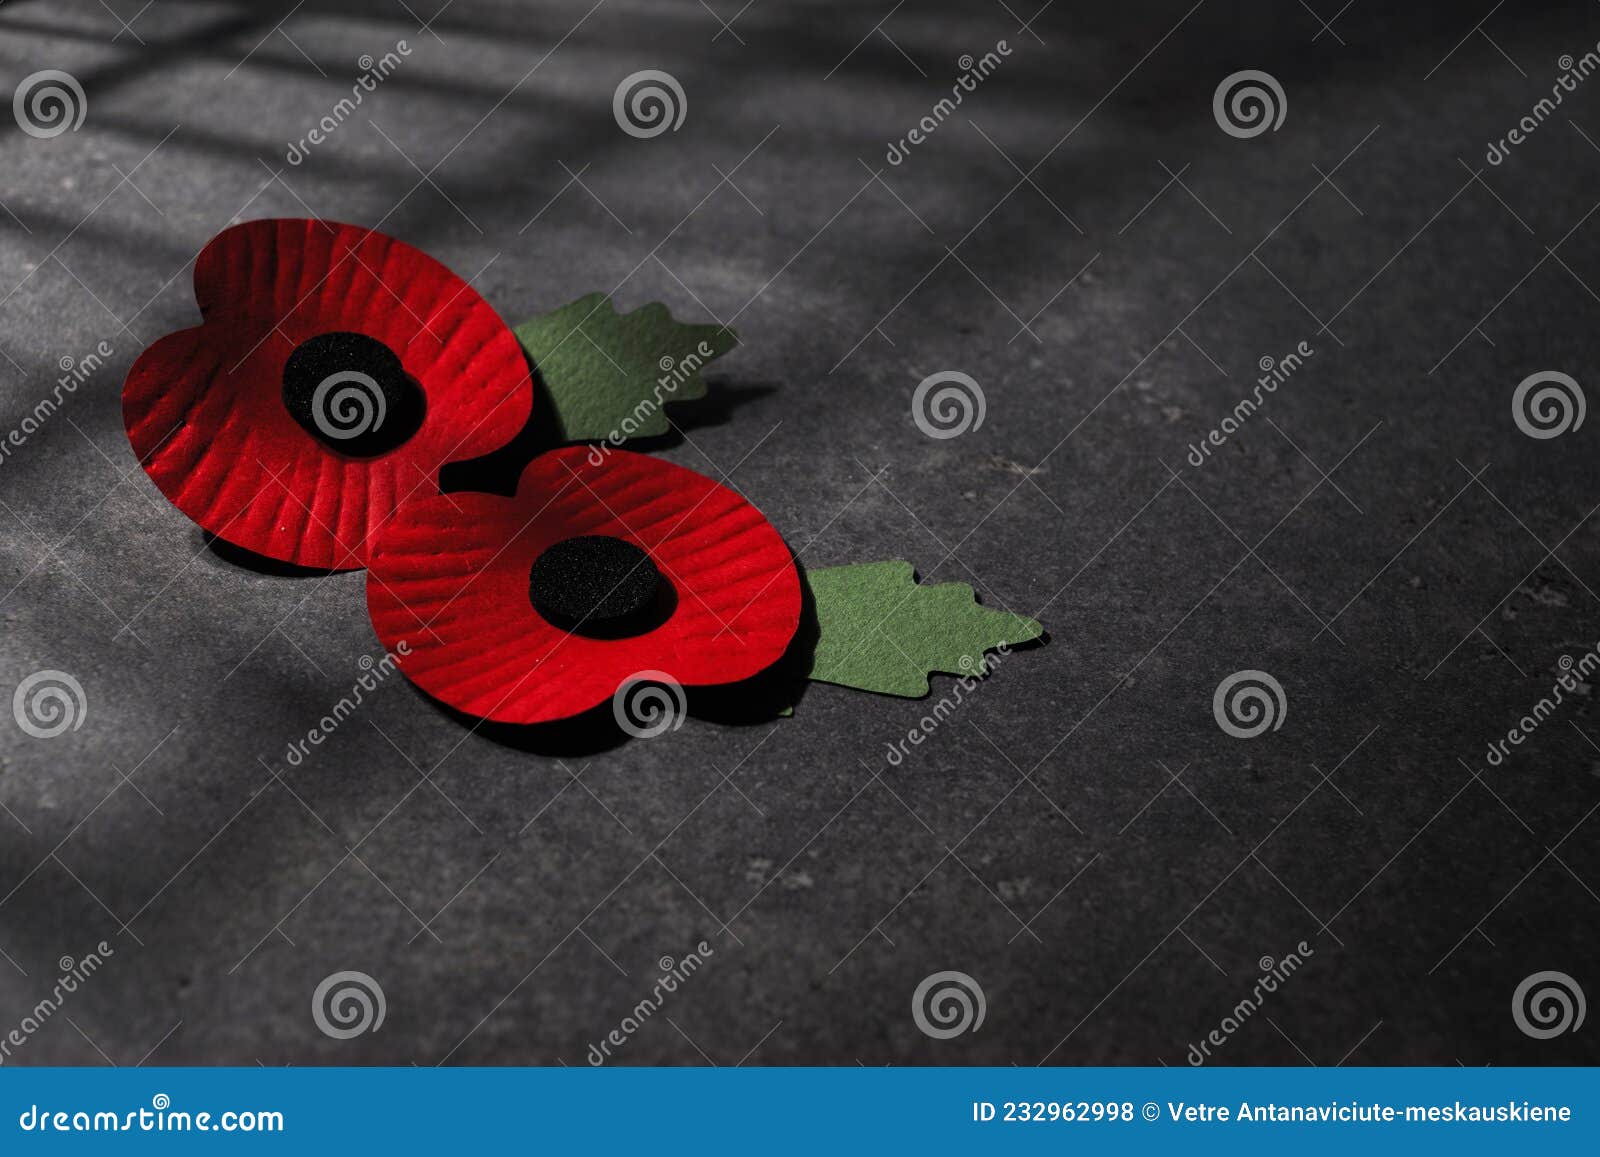 Día De La Conmemoración De La Guerra Mundial. La Amapola Roja Es